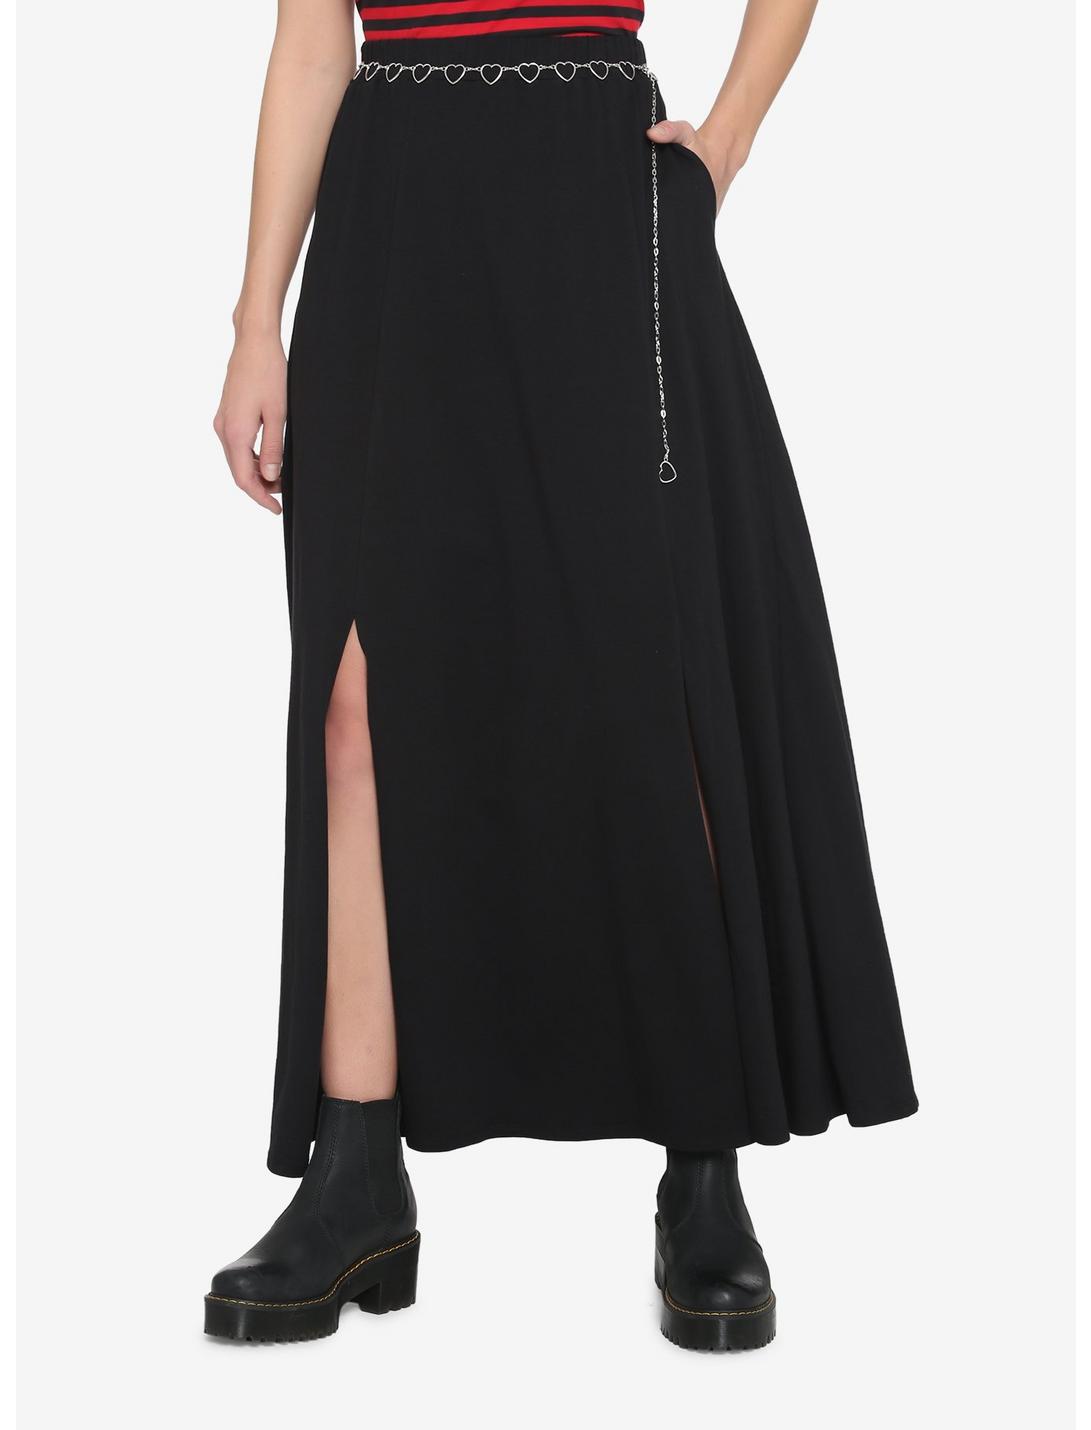 Black Heart Chain Belt Slit Maxi Skirt, BLACK, hi-res